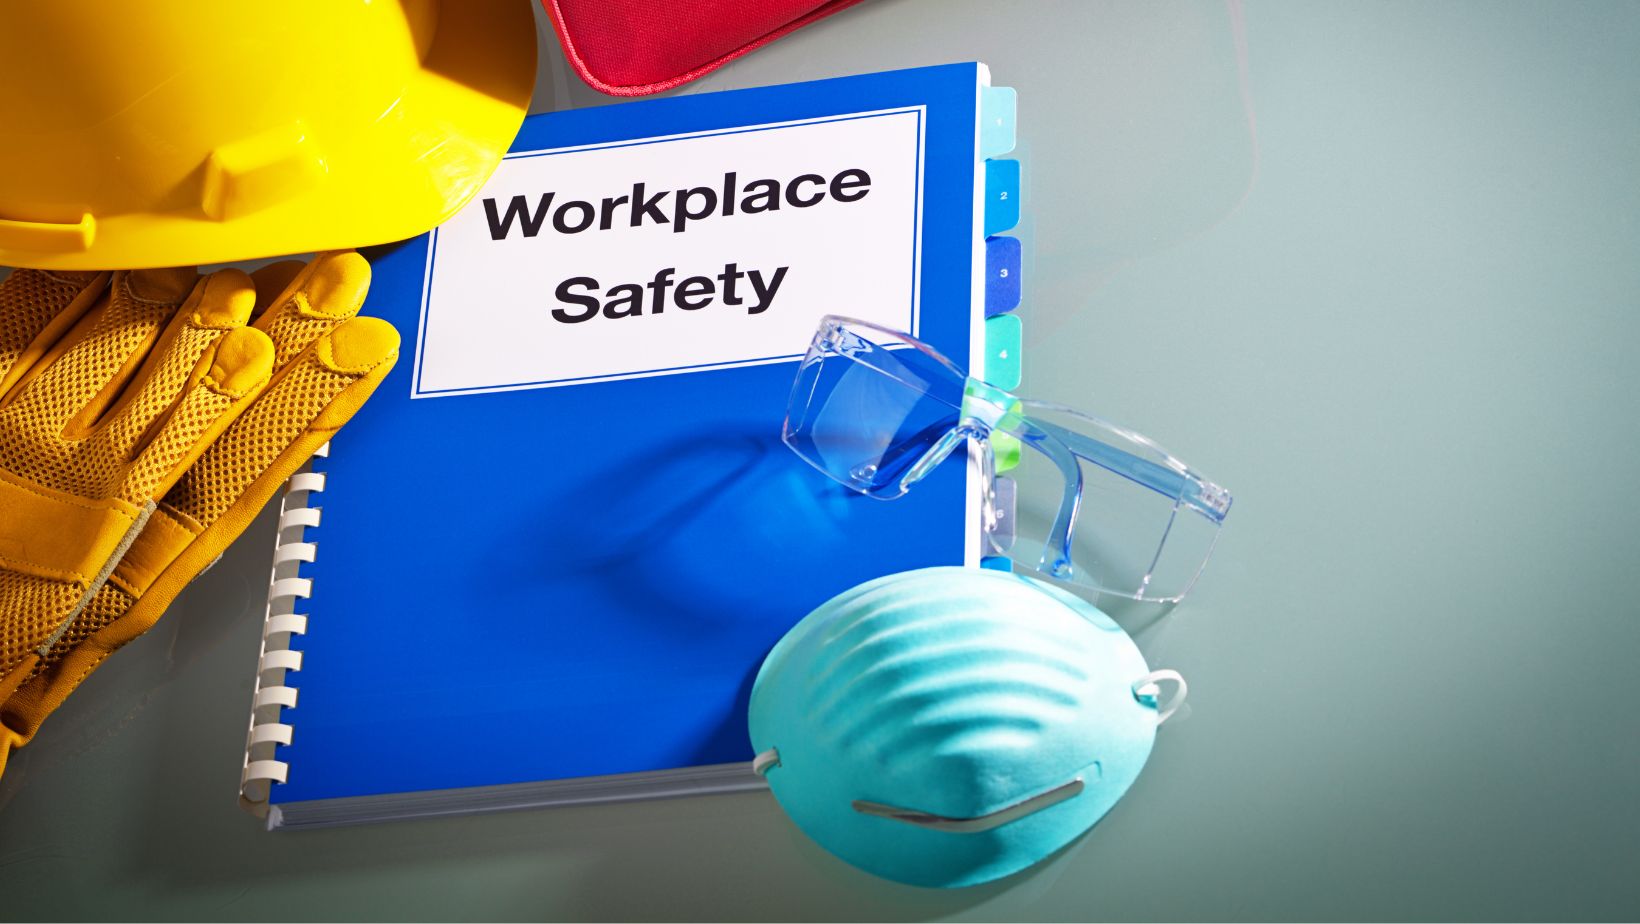 A megfelelő munkavédelmi eszközök beszerzése  elengedhetetlen a biztonságos munkavégzés szempontjából.